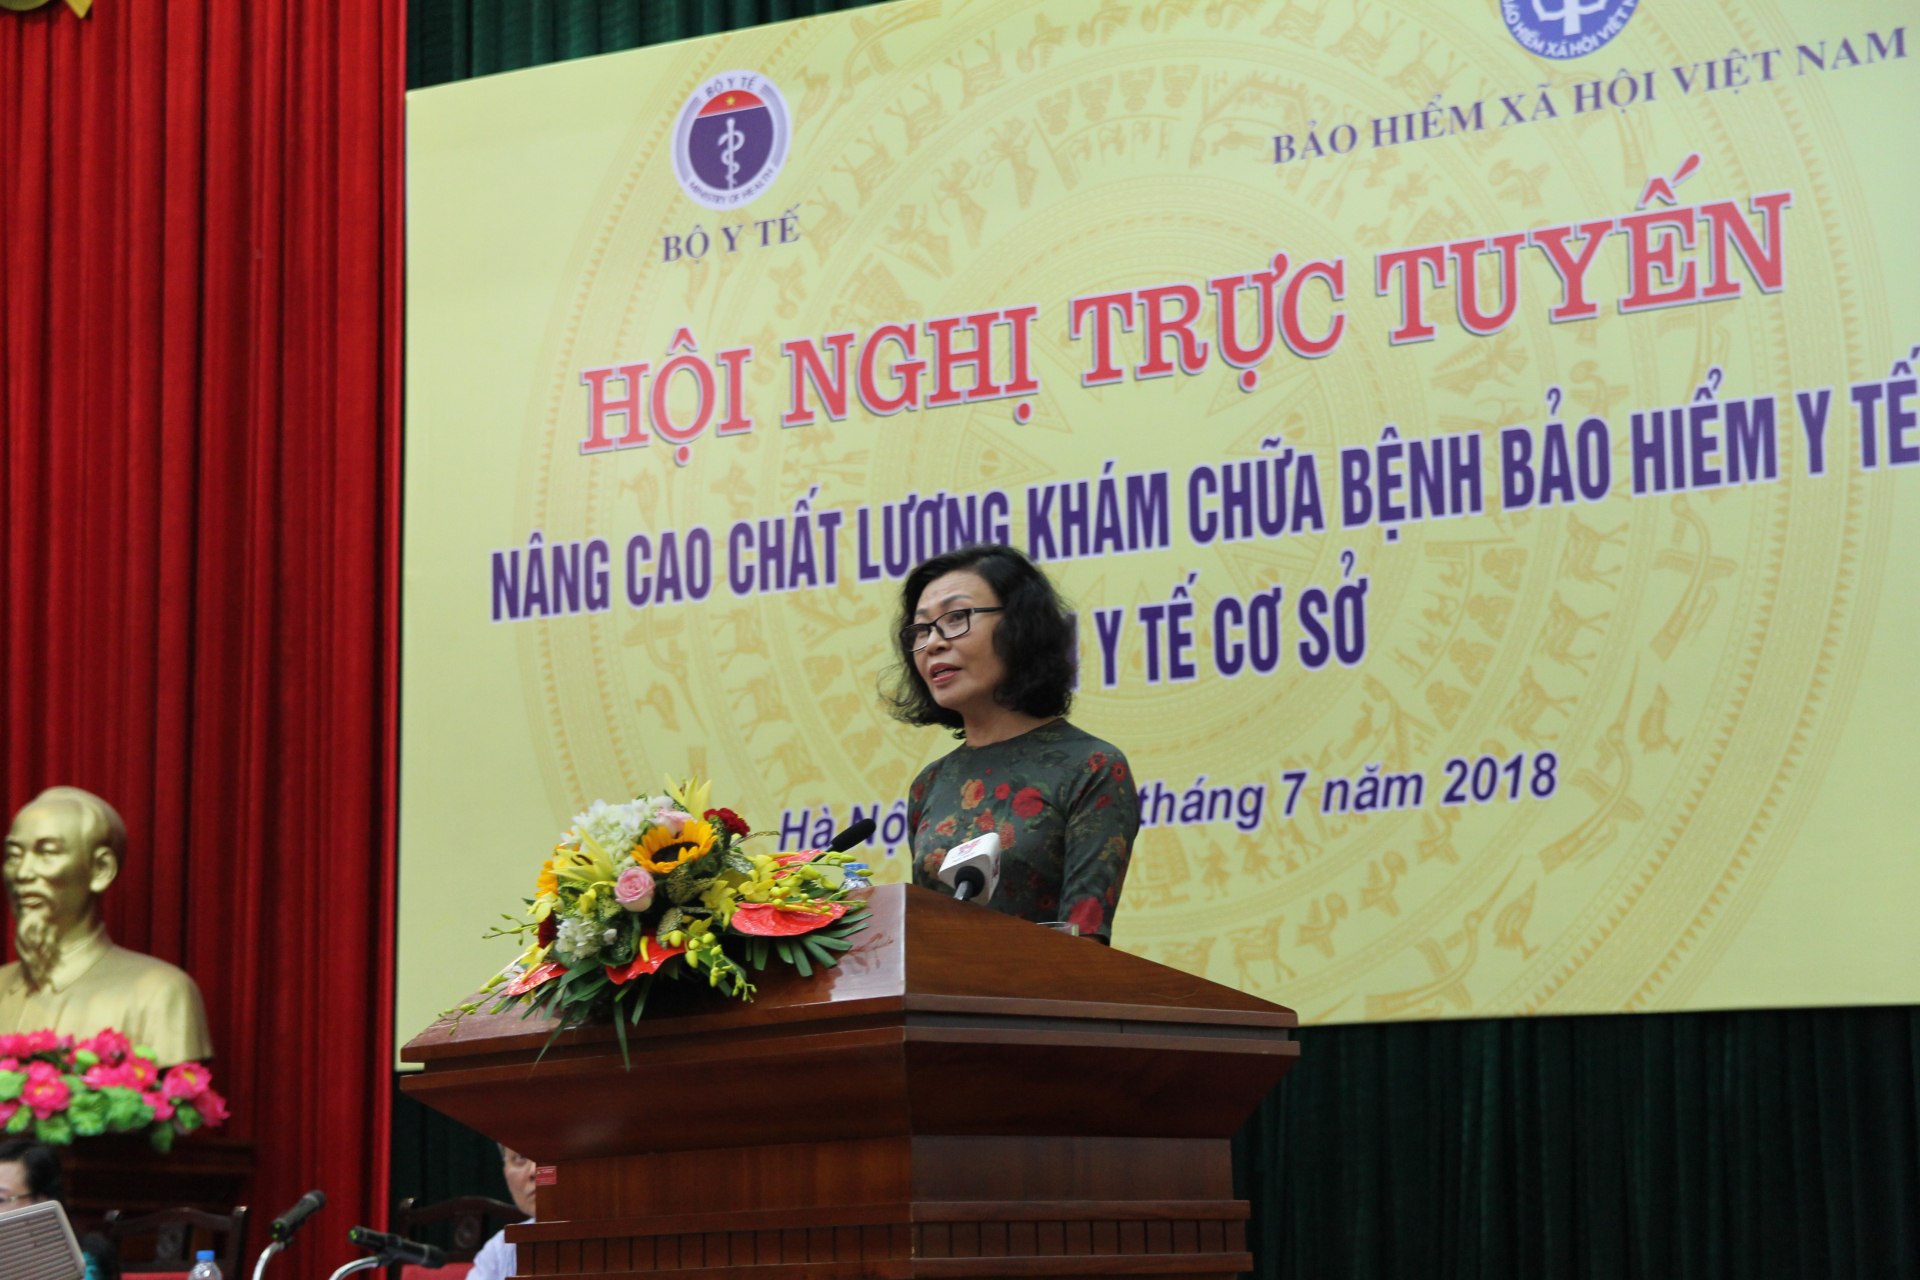 Tổng Giám đốc BHXH Việt Nam Nguyễn Thị Minh cho rằng, để nâng cao chất lượng KCB BHYT tại tuyến y tế cơ sở, cần thực hiện gói dịch vụ y tế cơ bản